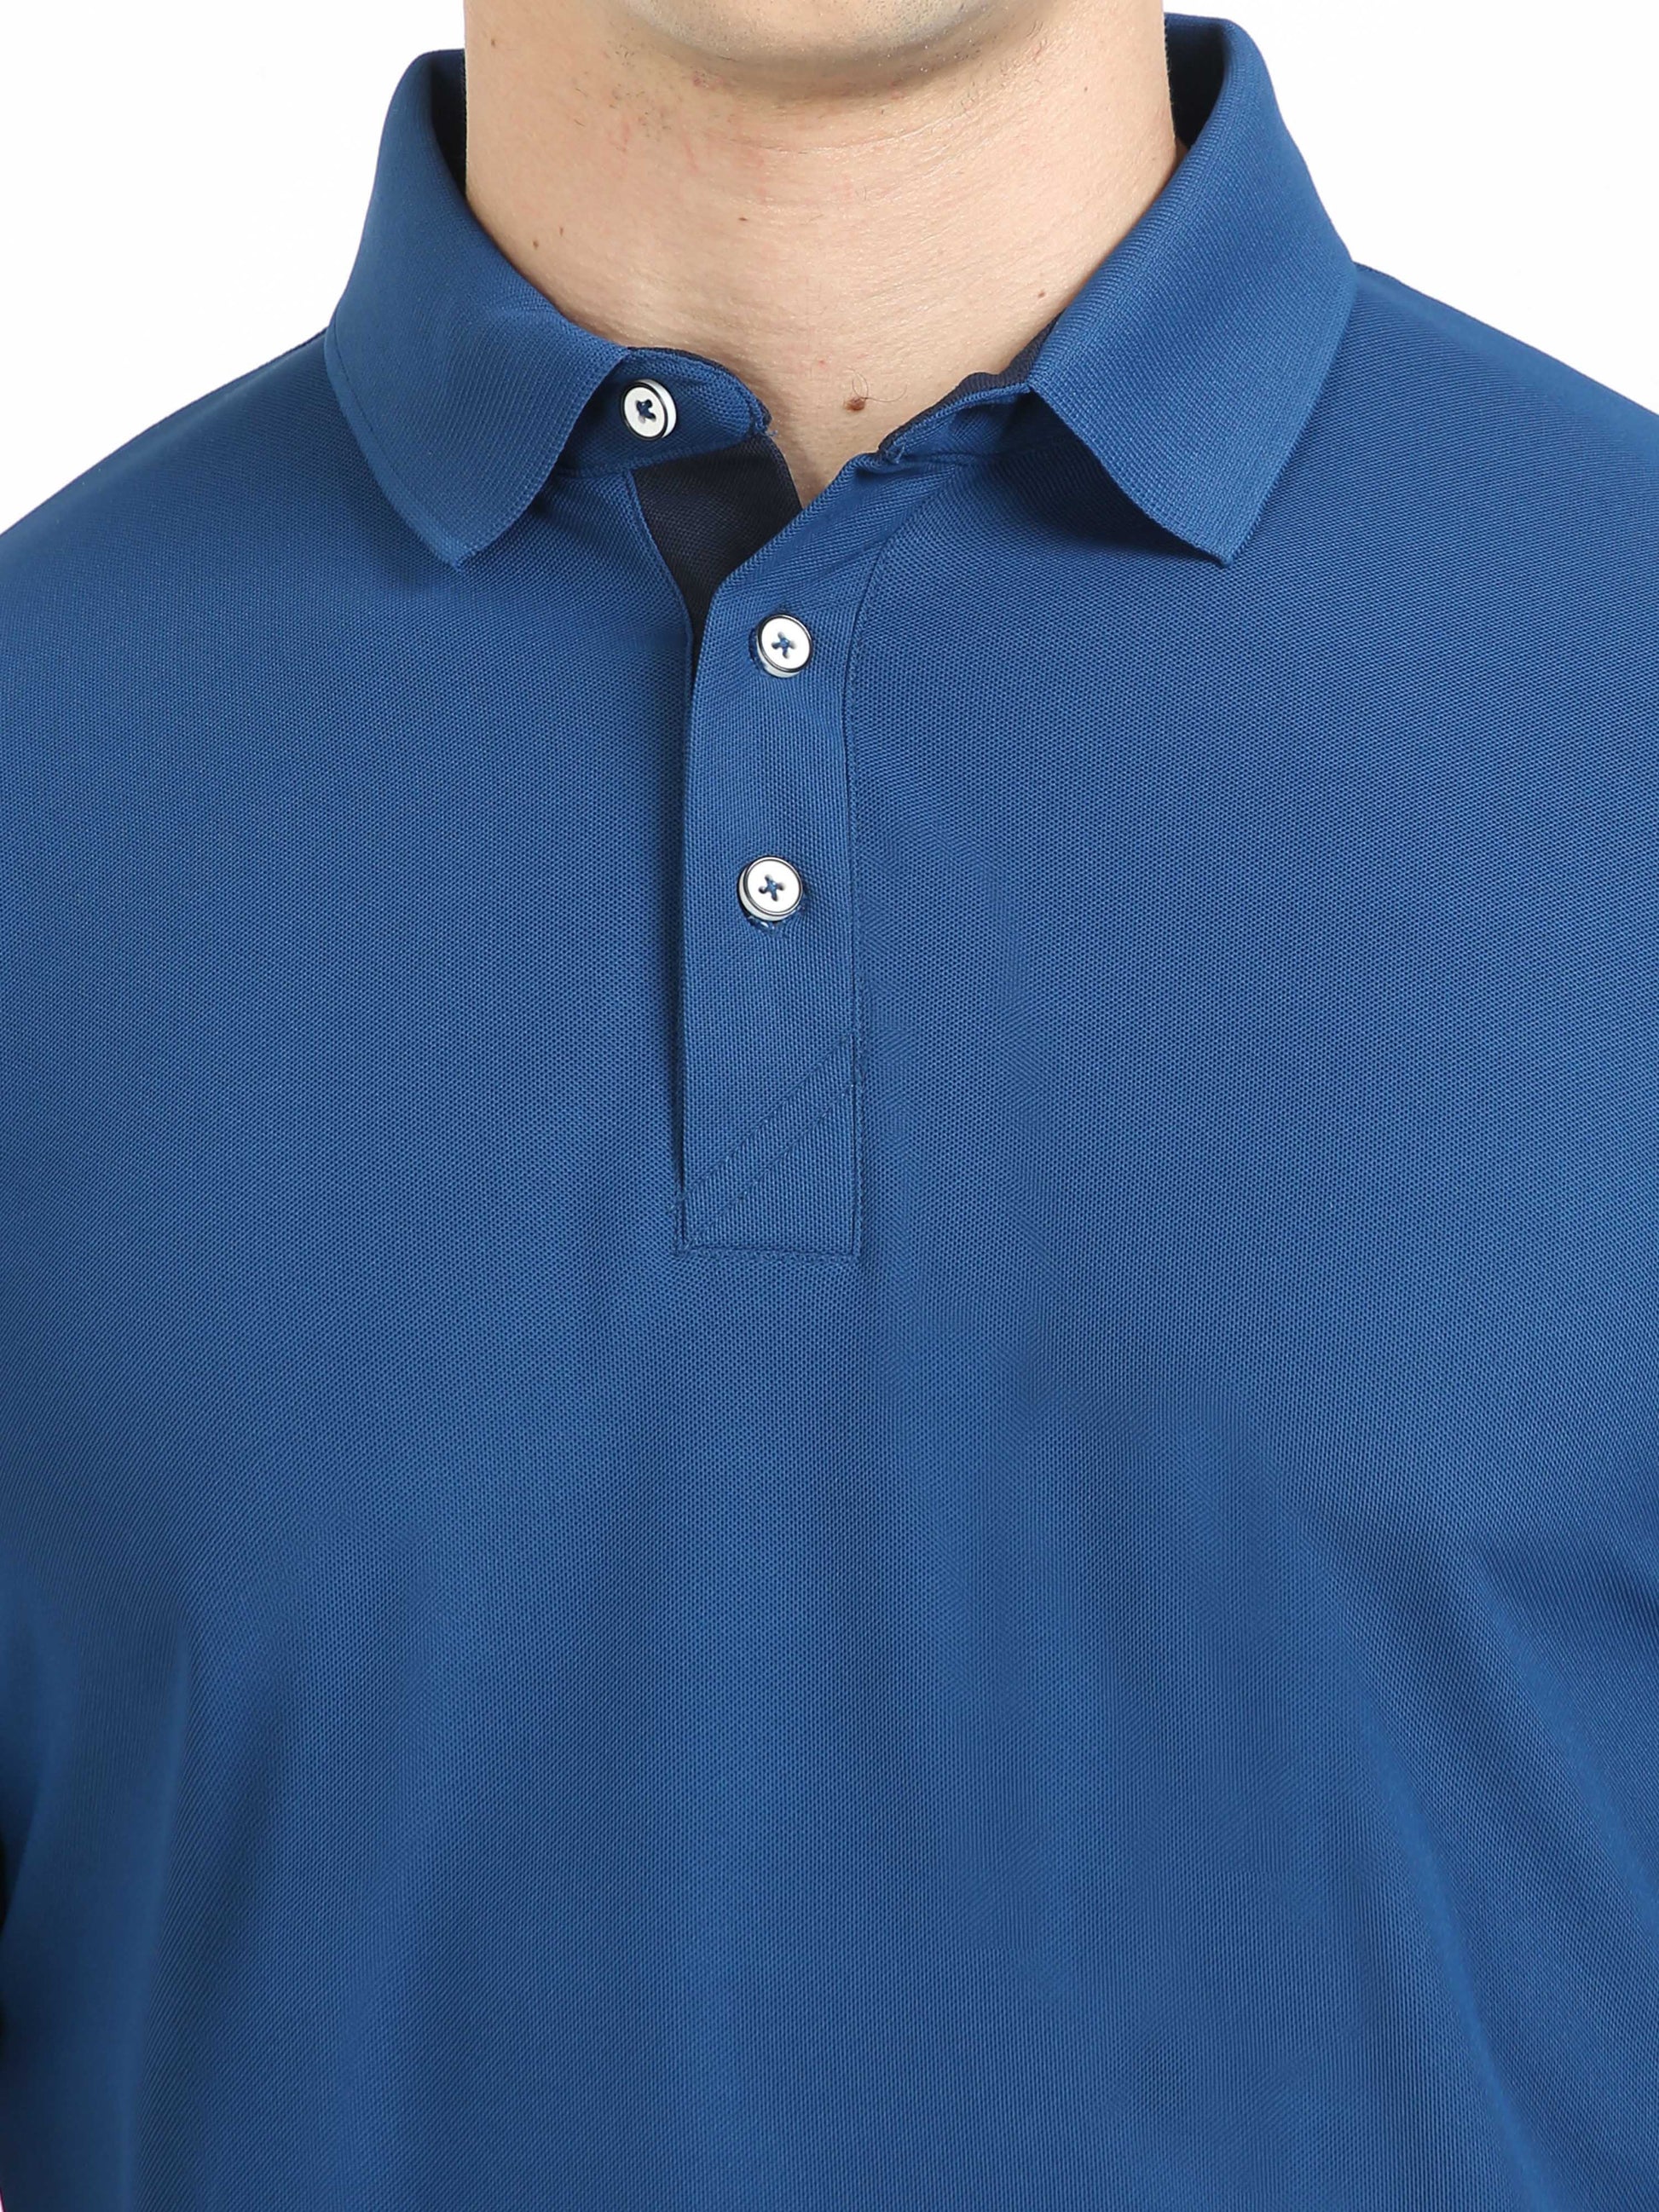 Rama Blue Men's Polo T-shirt